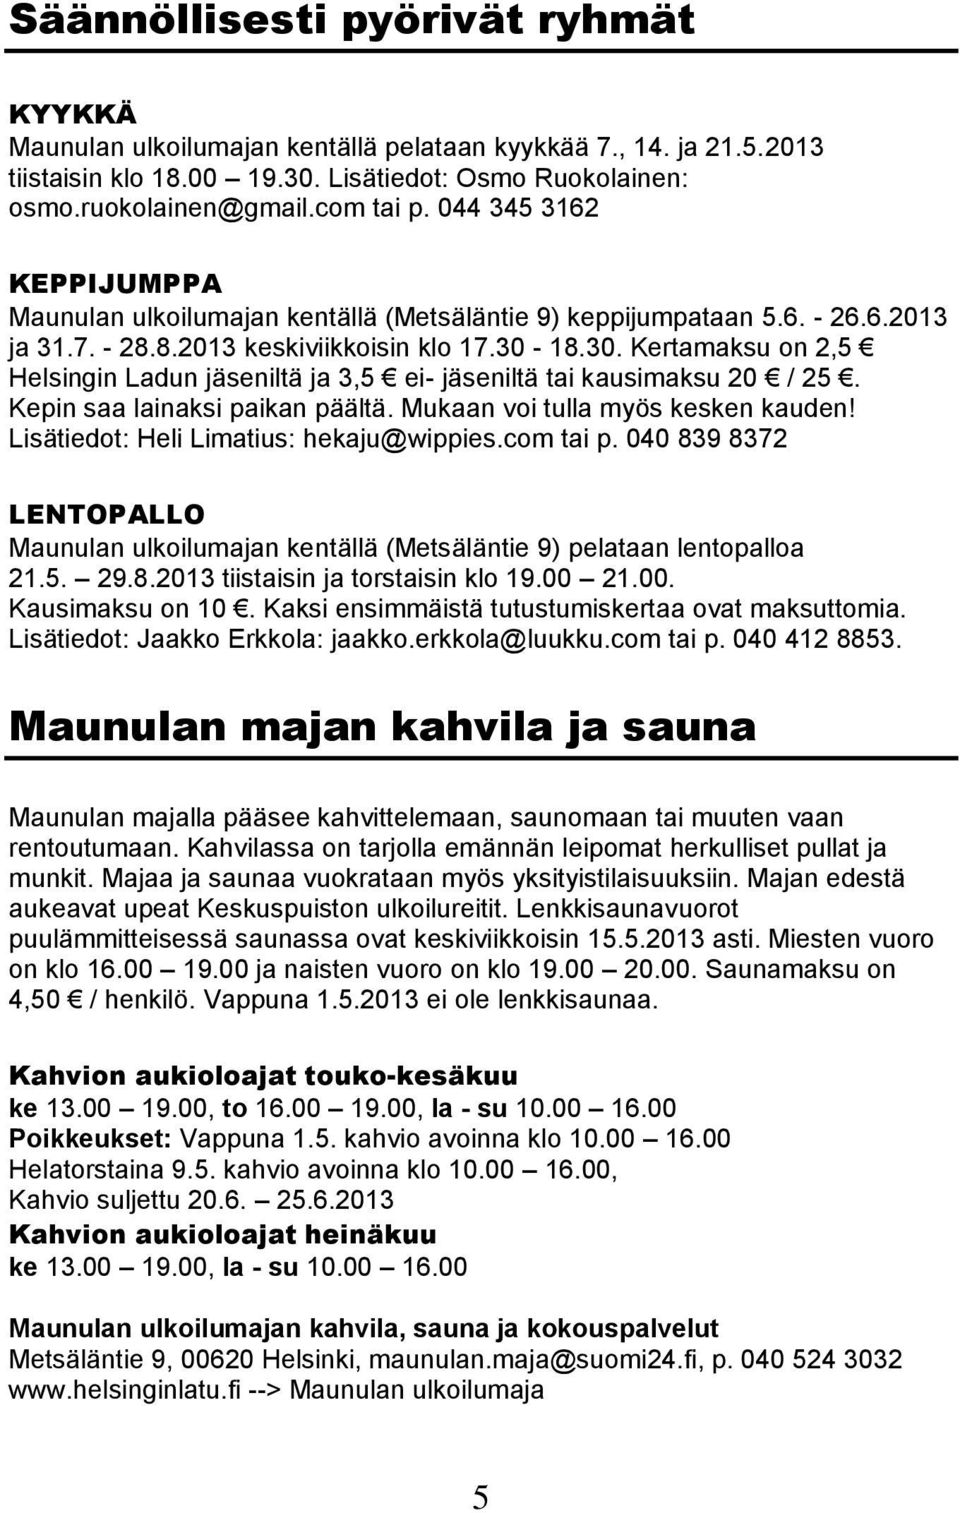 18.30. Kertamaksu on 2,5 Helsingin Ladun jäseniltä ja 3,5 ei- jäseniltä tai kausimaksu 20 / 25. Kepin saa lainaksi paikan päältä. Mukaan voi tulla myös kesken kauden!